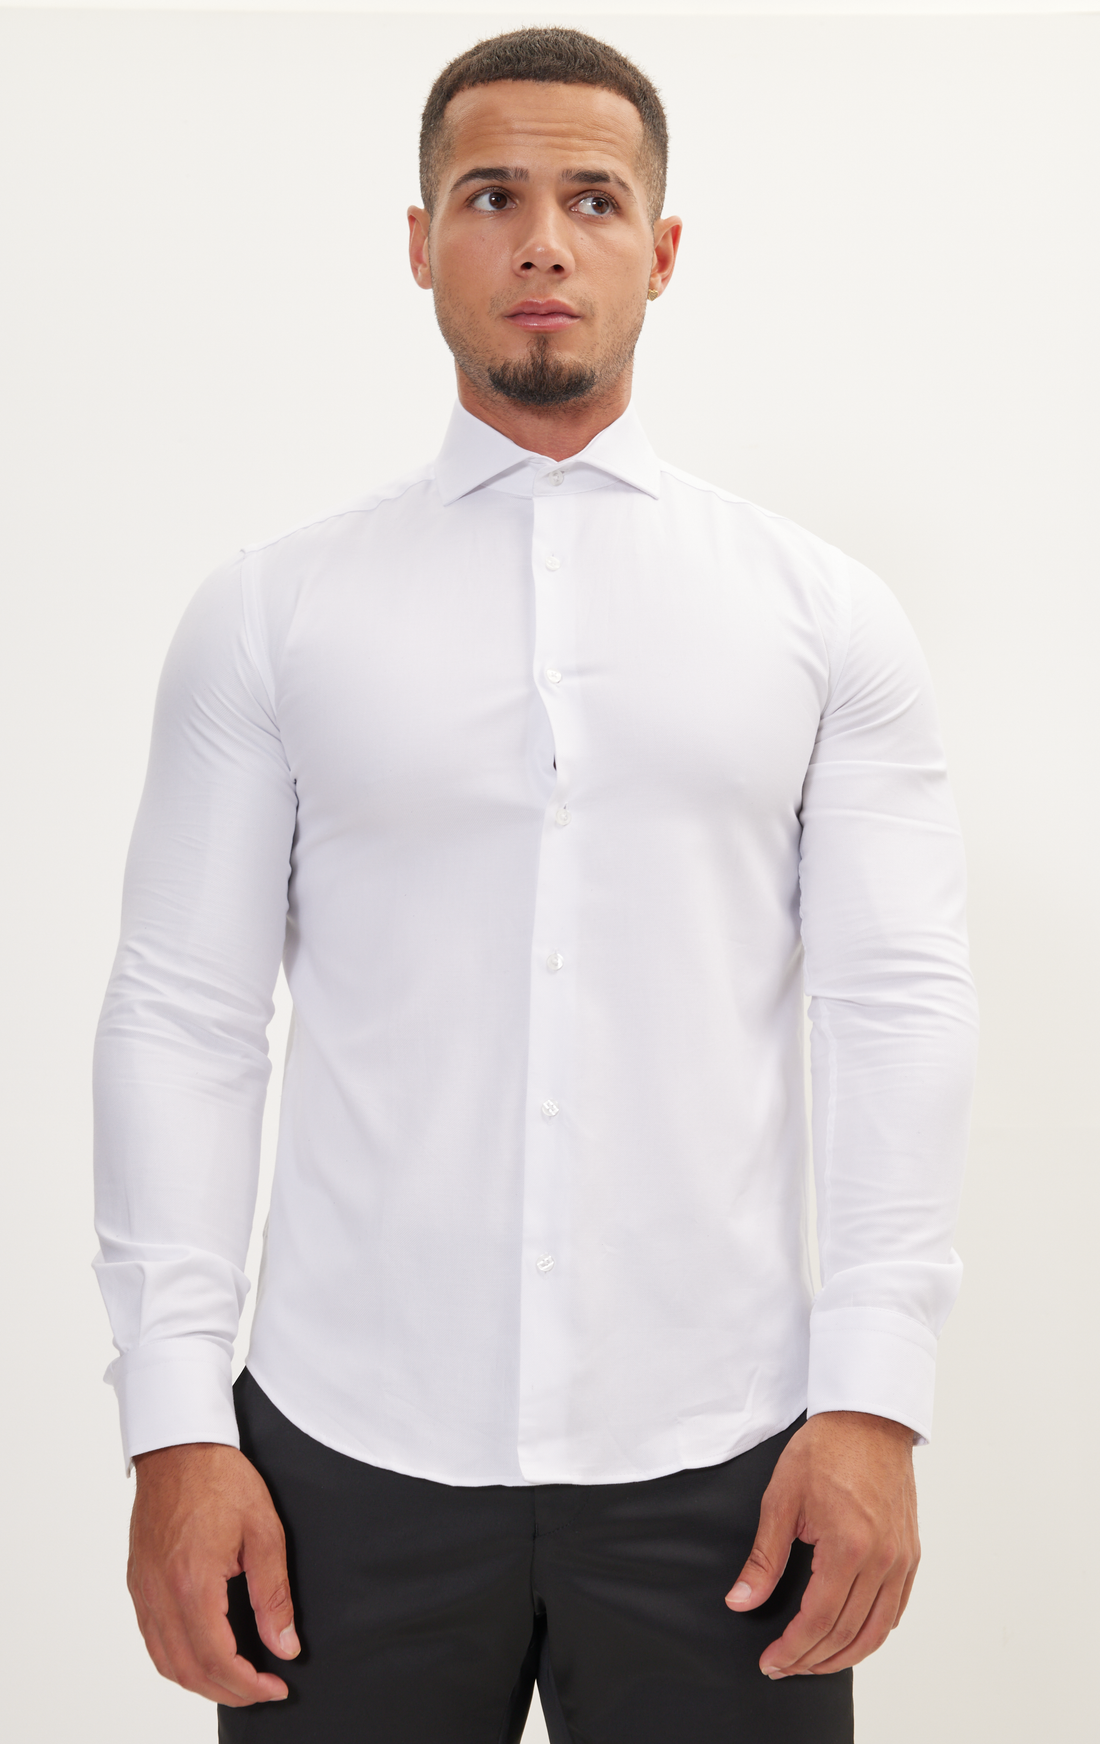 N° AN4904 - DRESS SHIRT PIQUE WHITE